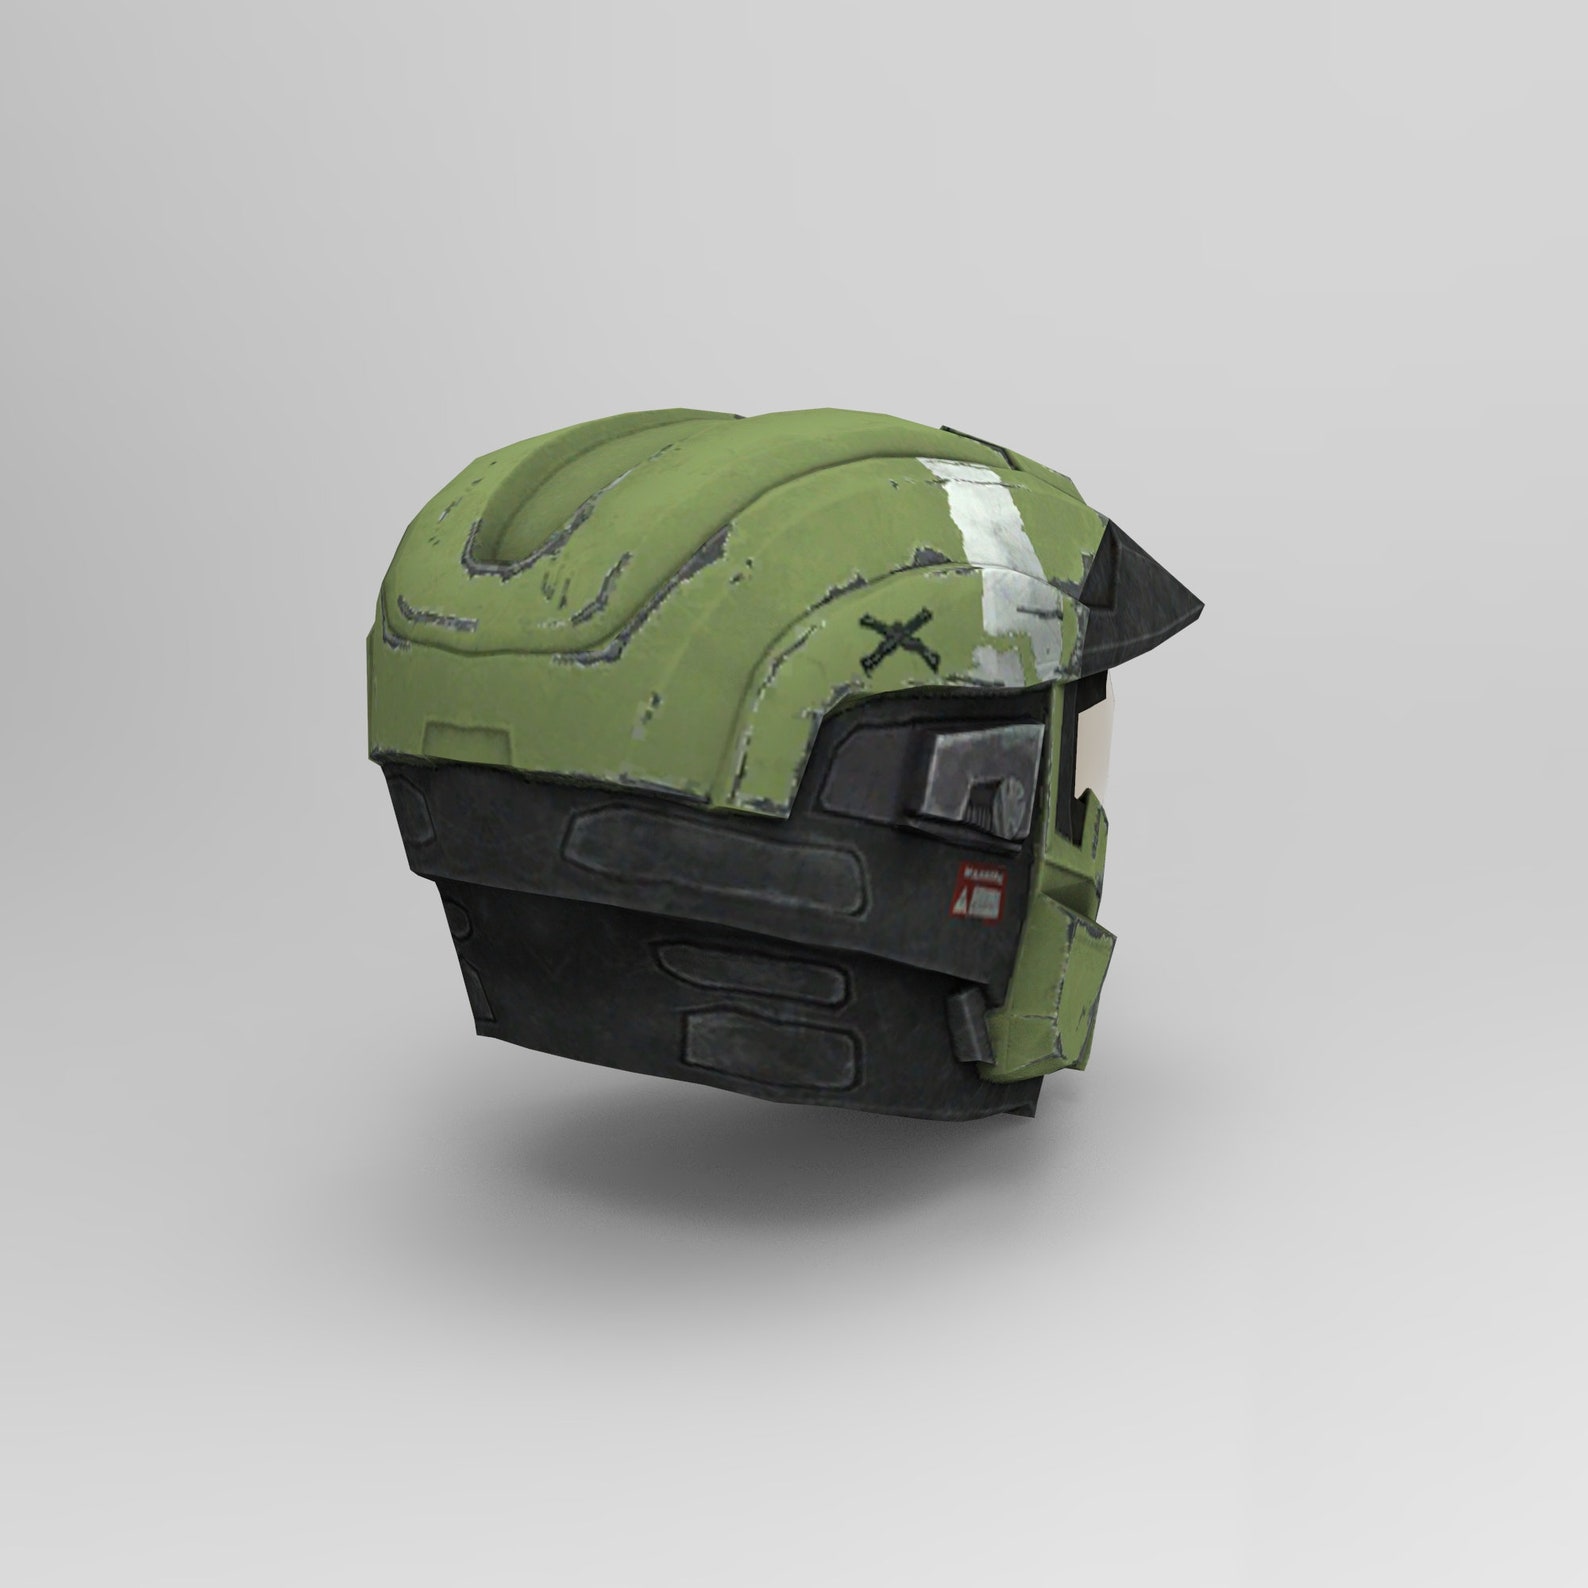 Mjolnir Mark 5 Halo Reach Spartan Helmet Wearable Template for | Etsy